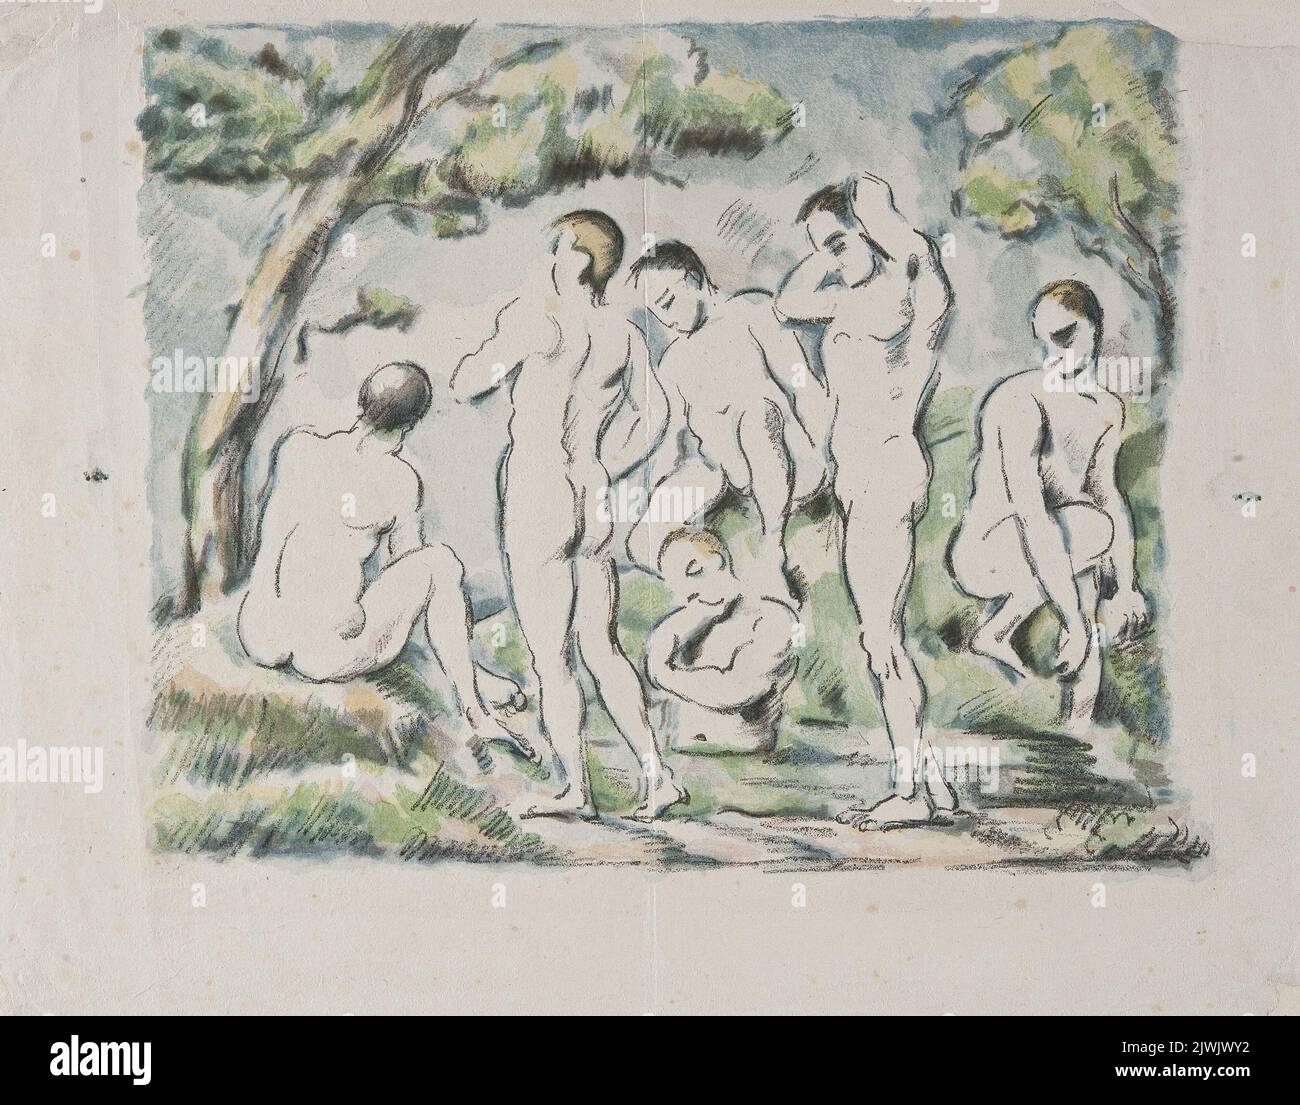 Les Baigneurs. Petite planche. Vollard, Ambroise (1867-1939), originator, Cézanne, Paul (1839-1906), graphic artist, Clot, Auguste (1858-1936), graphic artist Stock Photo